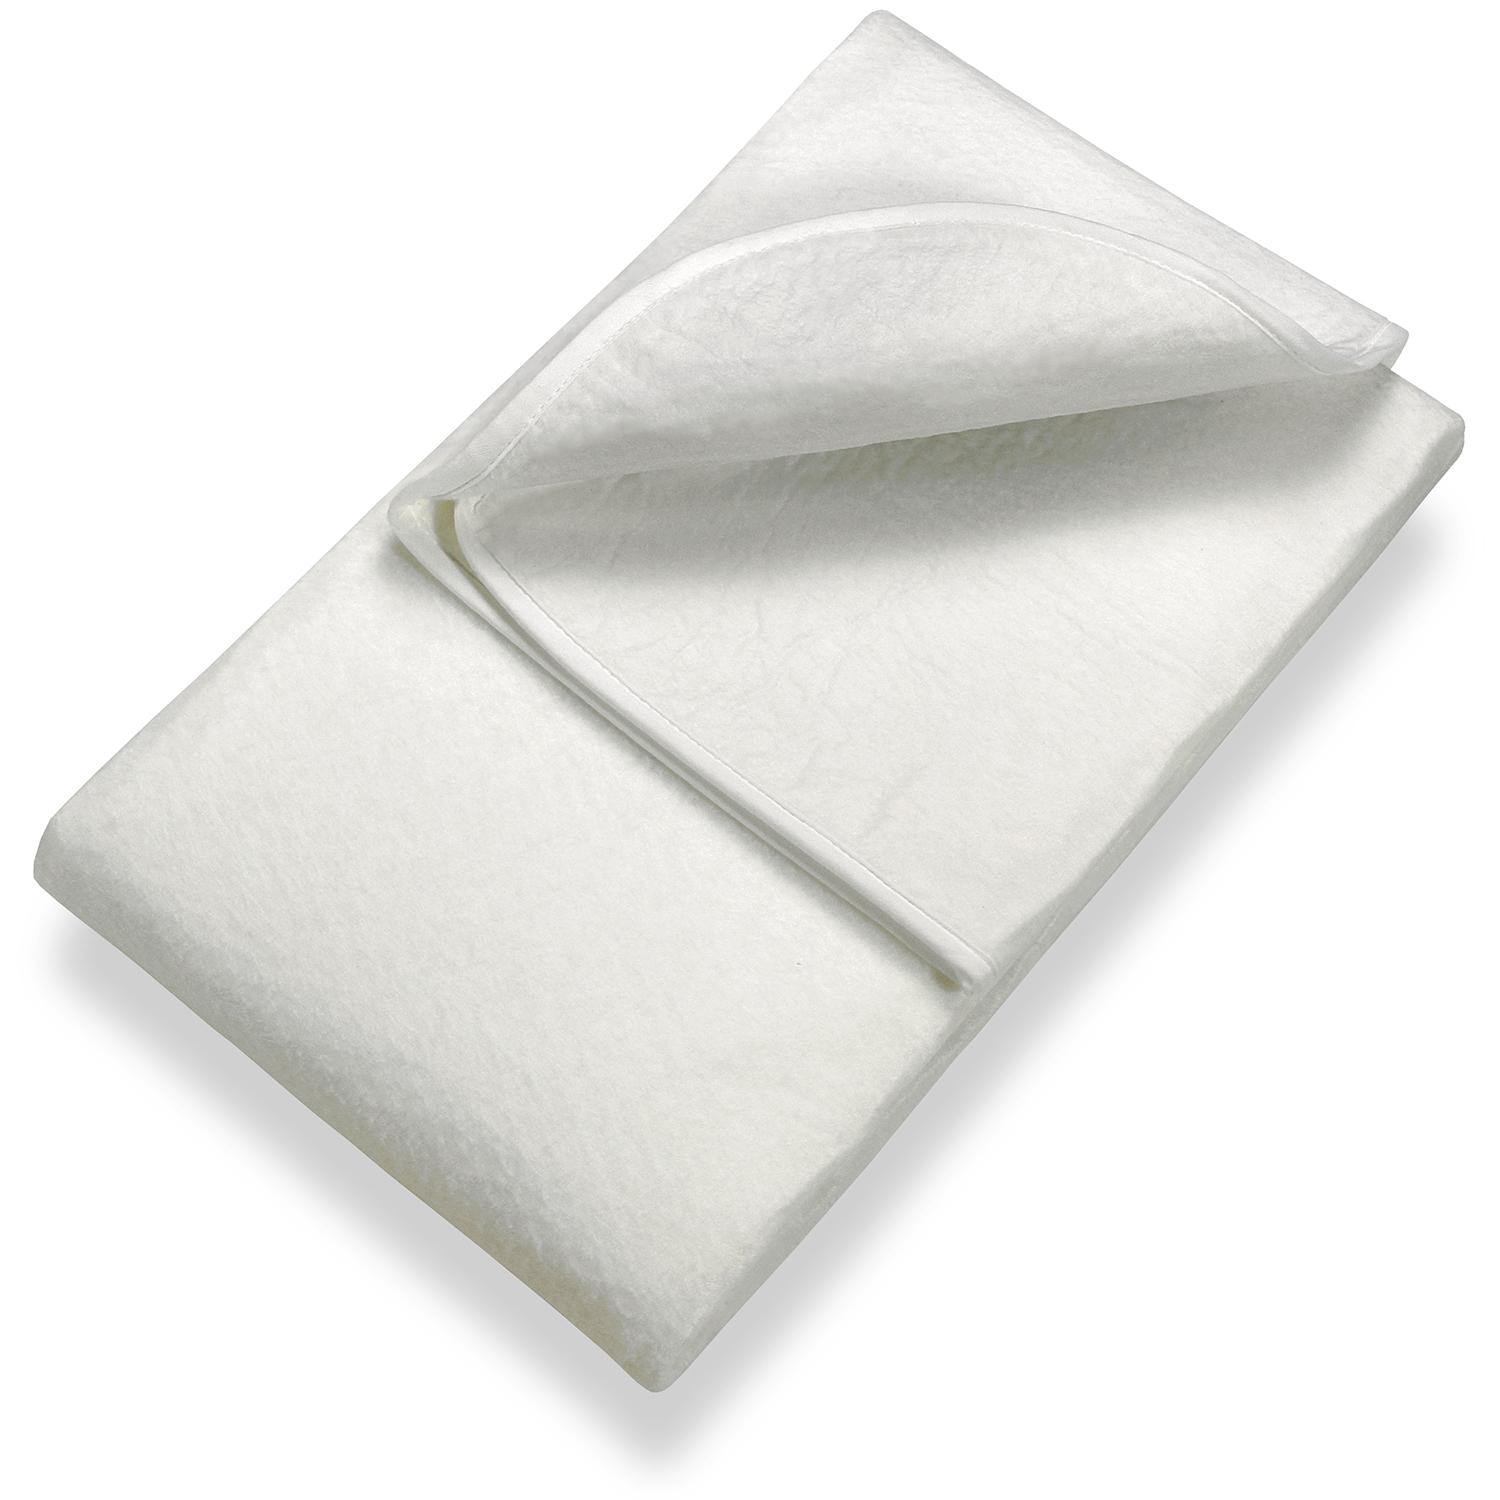 Sleezzz Základný ihličkový podklad pod matrac 100 x 200 cm, chránič matraca na lamelový rošt, biely